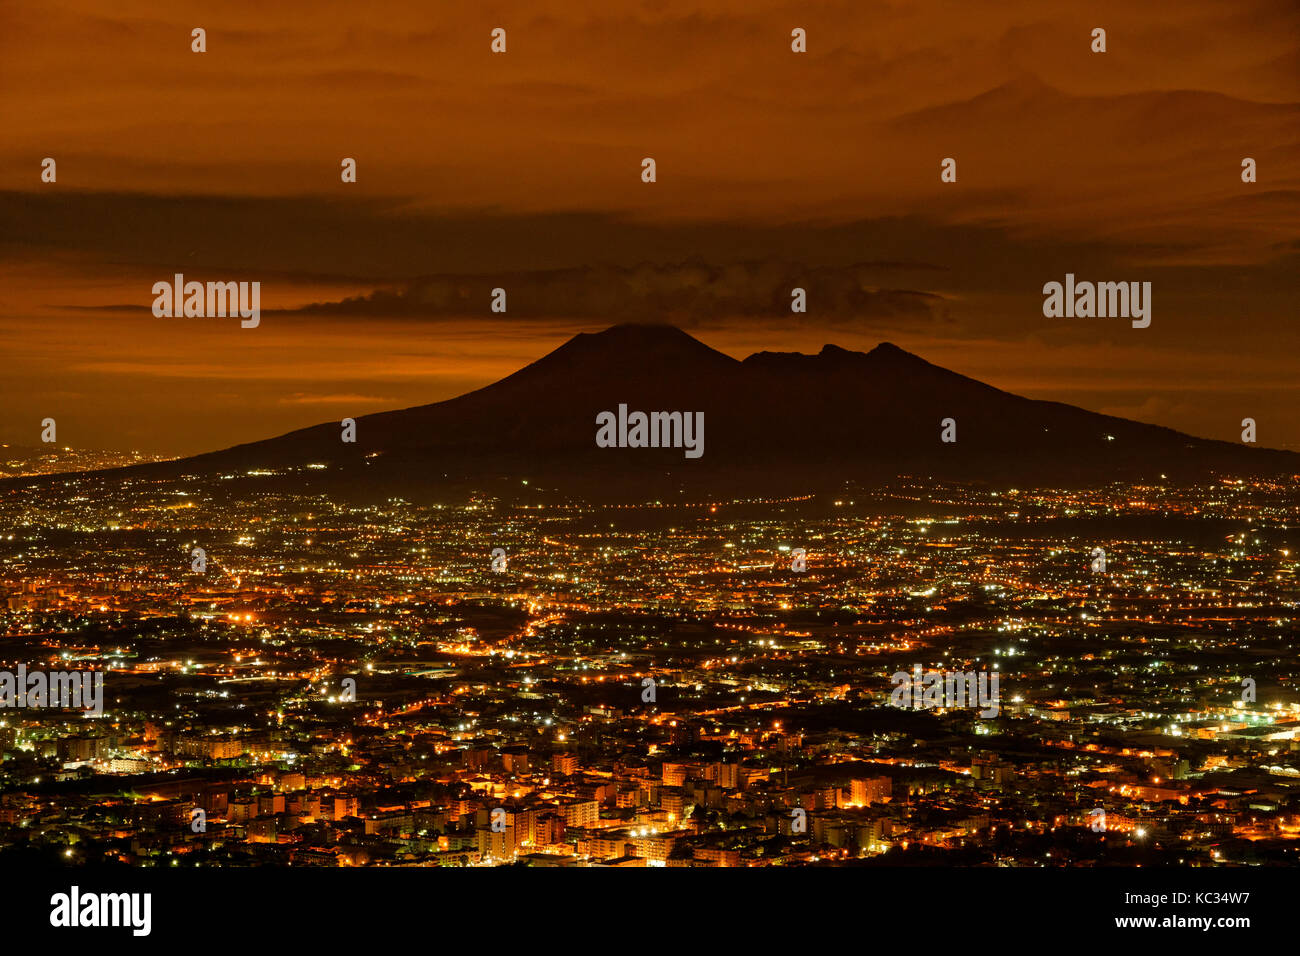 Monte Vesubio recortadas por el resplandor de la conurbación de Nápoles en la Provincia de Campania, en el sur de Italia. Foto de stock